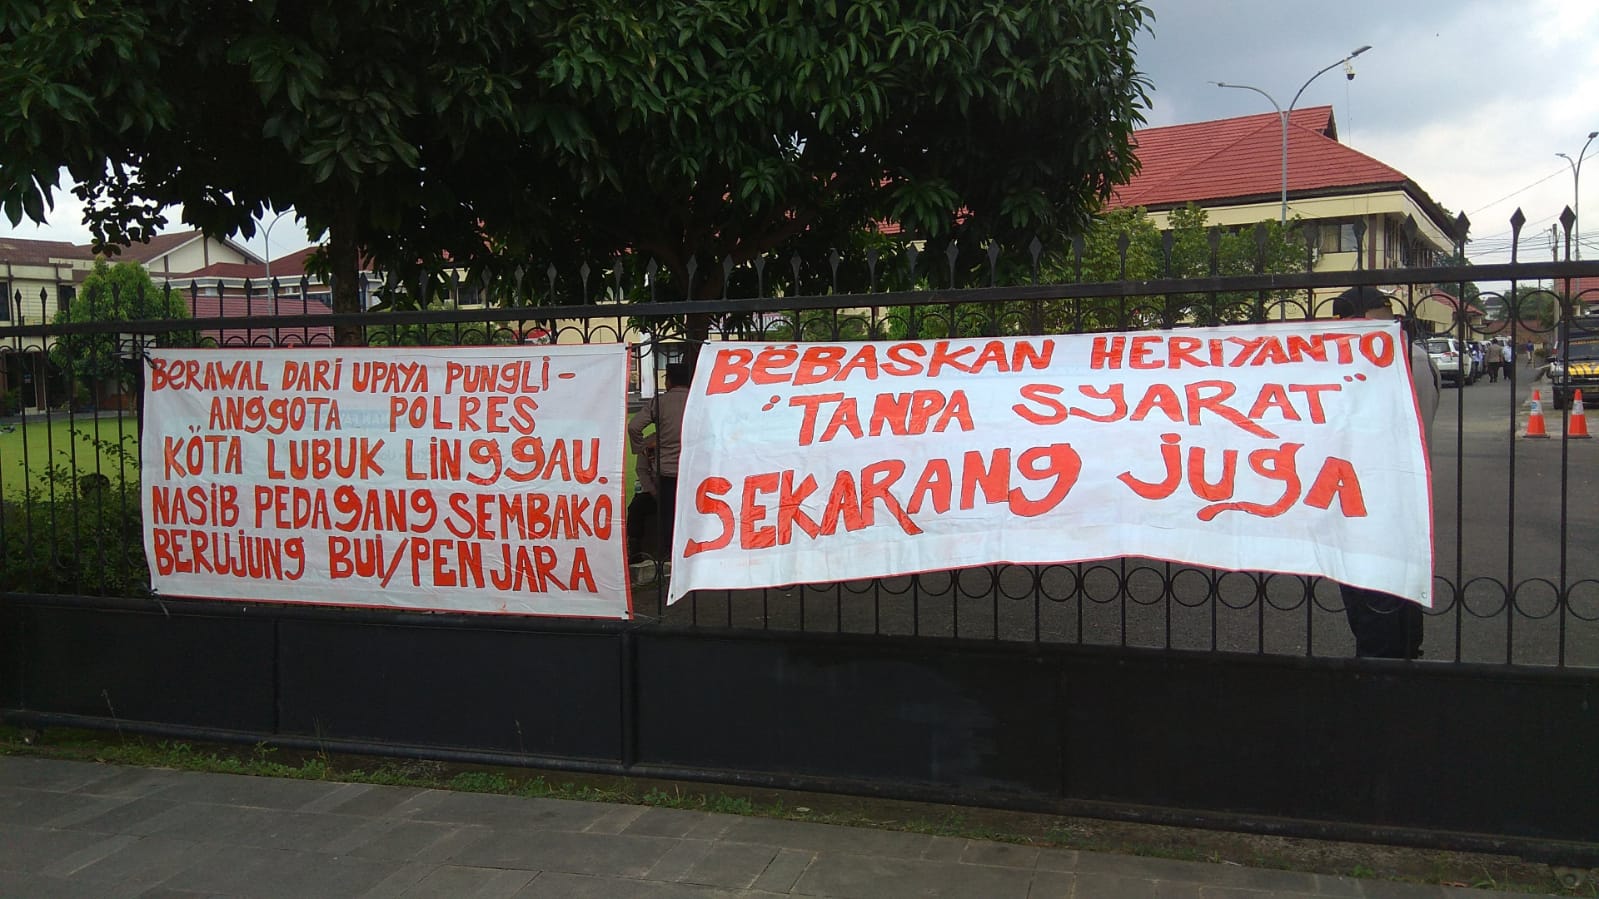 Demo Polres Lubuklinggau, Massa Sebut Pungli Rp20 Juta Kepada Pedagang Sembako